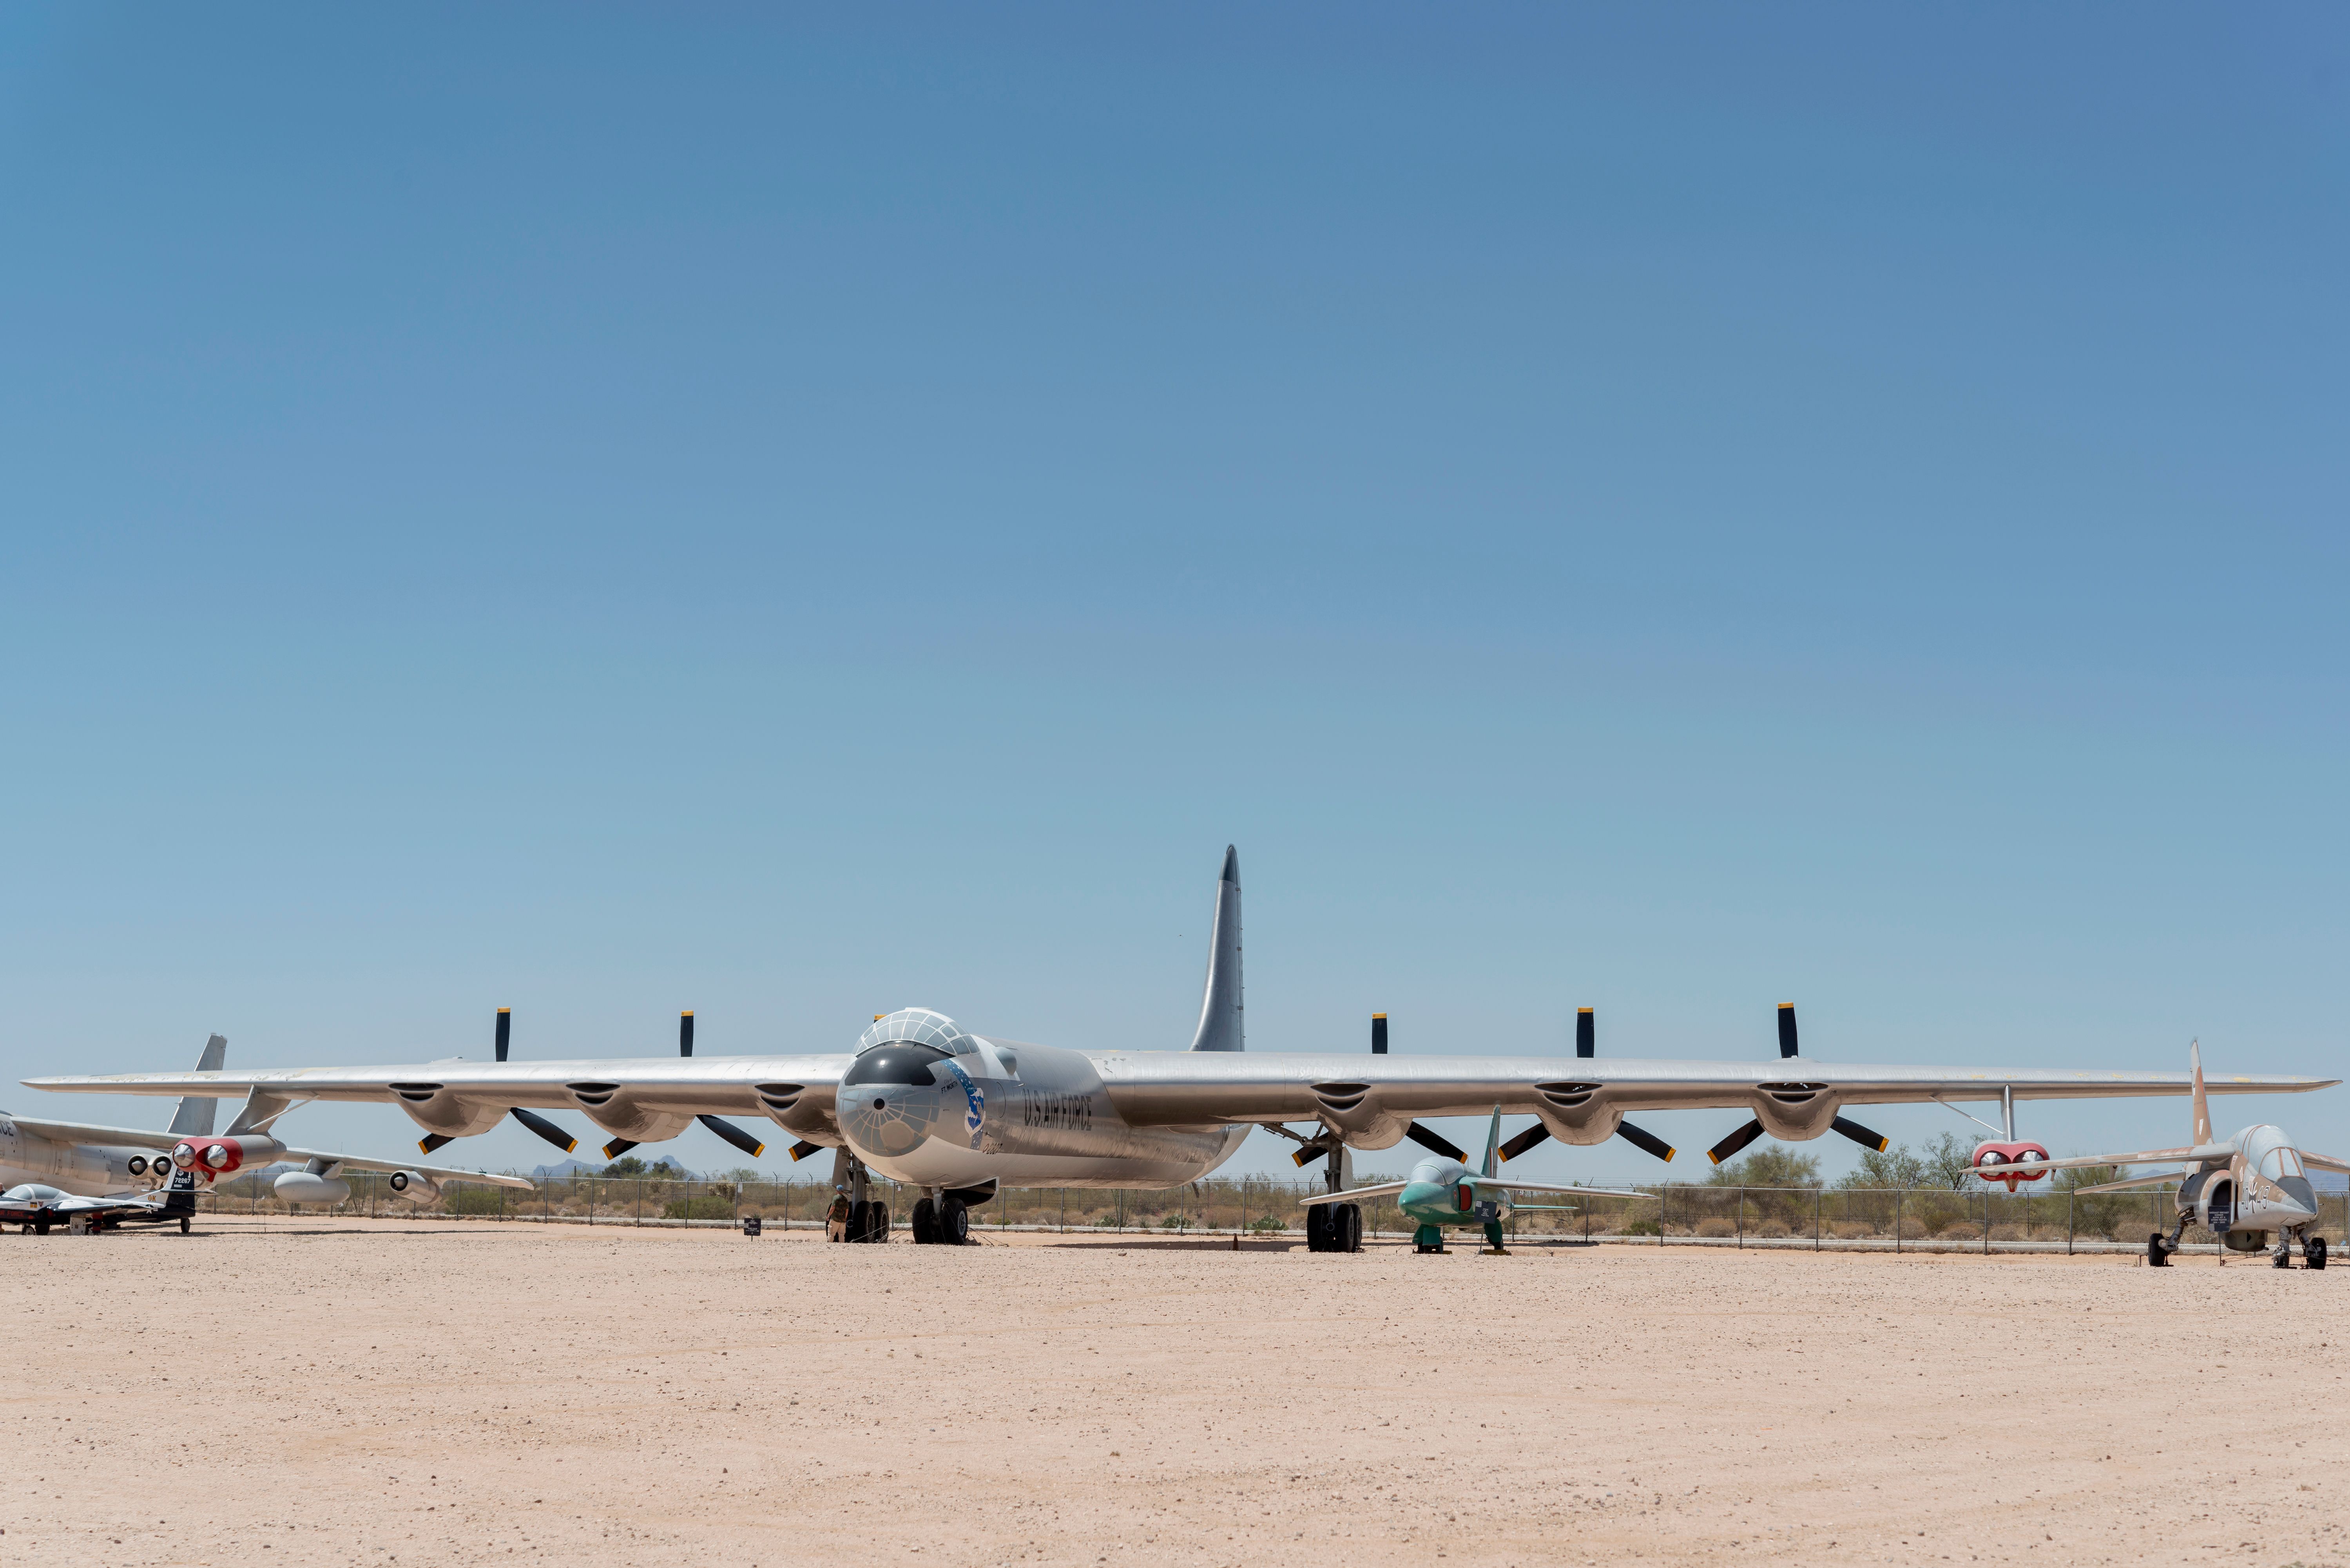 A Convair B-36 Peacemaker parked in a desert.